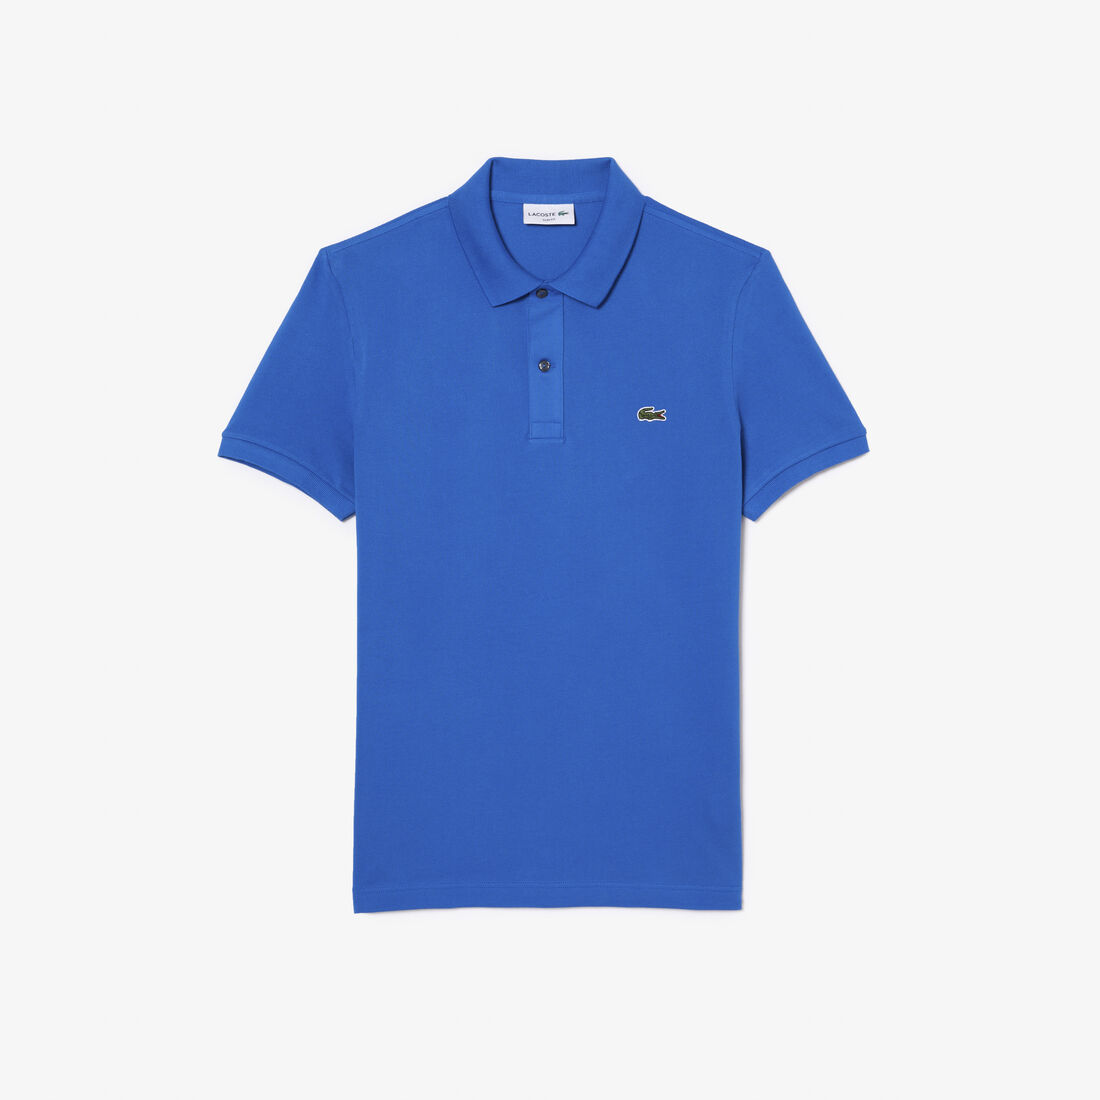 Lacoste Slim Fit In Petit Piqué Polo Shirts Herren Blau | KVQX-28934